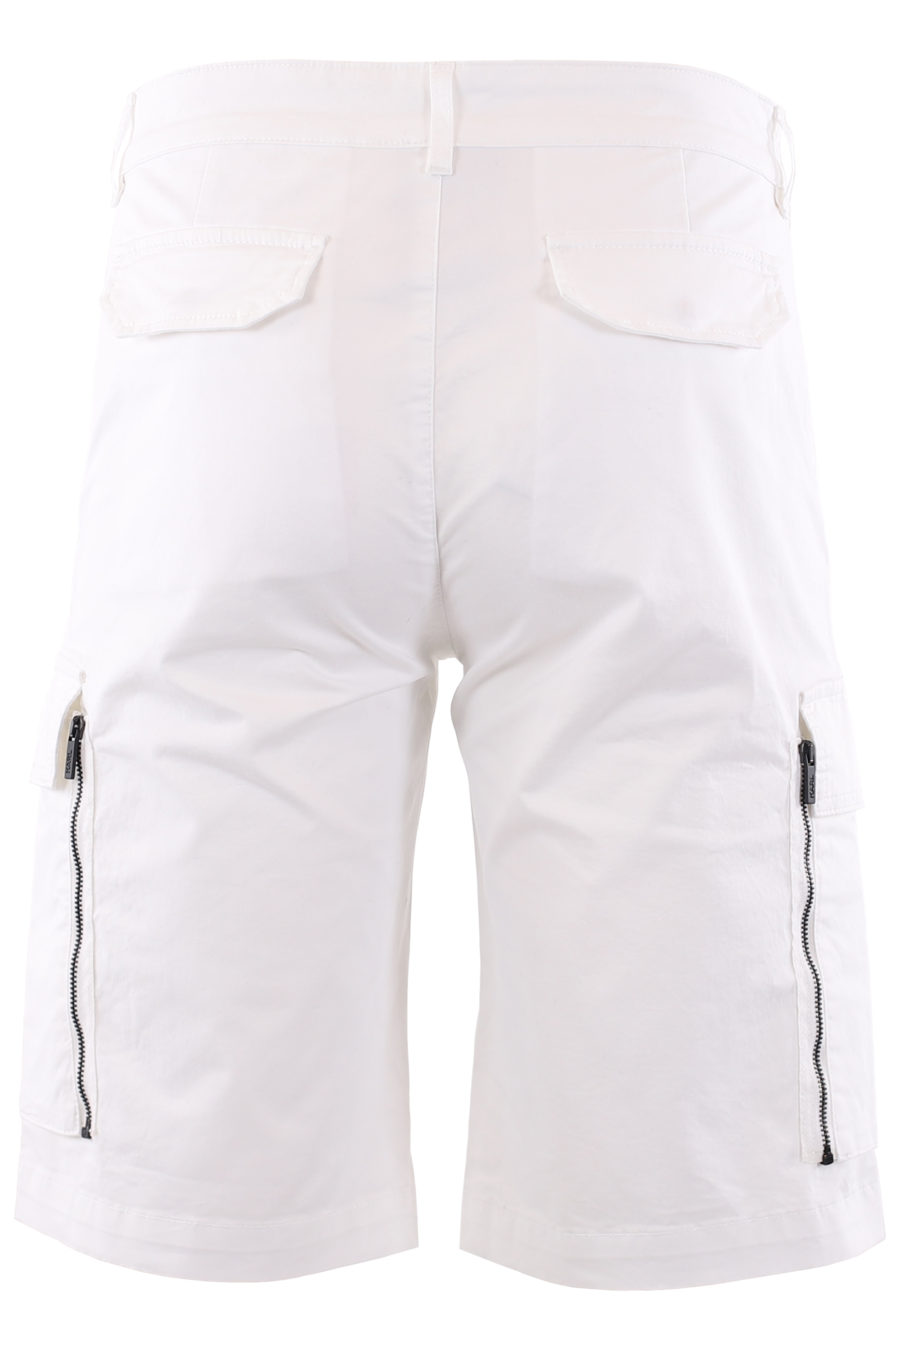 Pantalón corto blanco cargo - IMG 6634